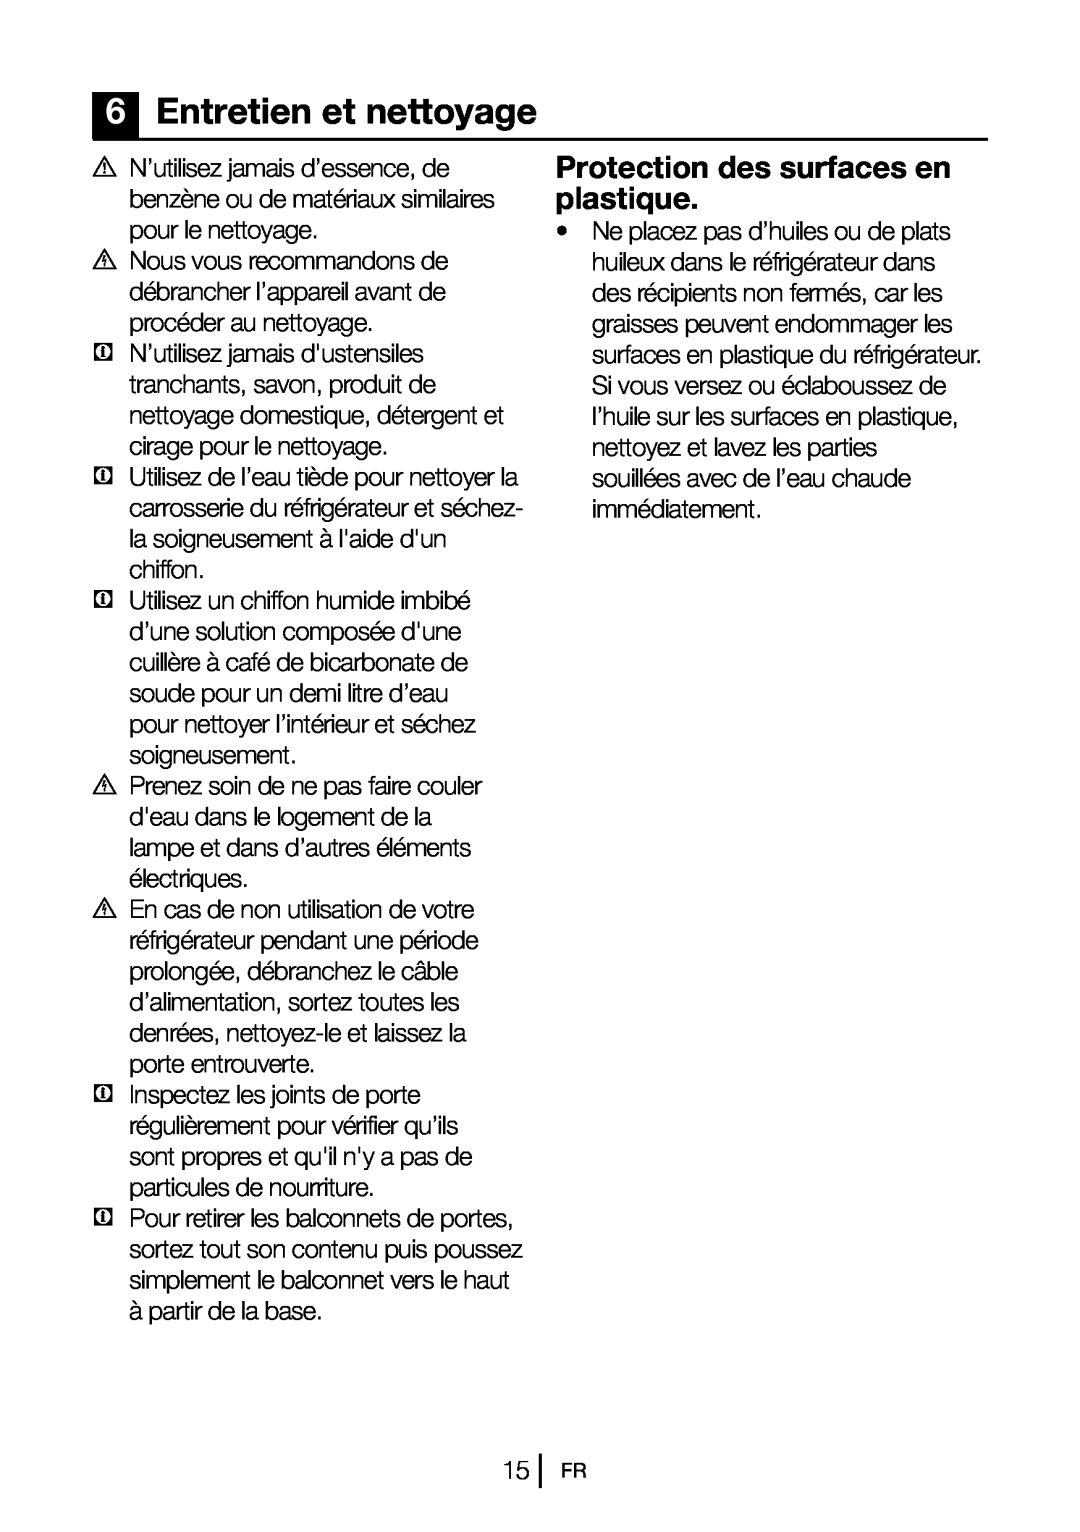 Blomberg DSM 9651 A+ manual 6Entretien et nettoyage, Protection des surfaces en plastique 